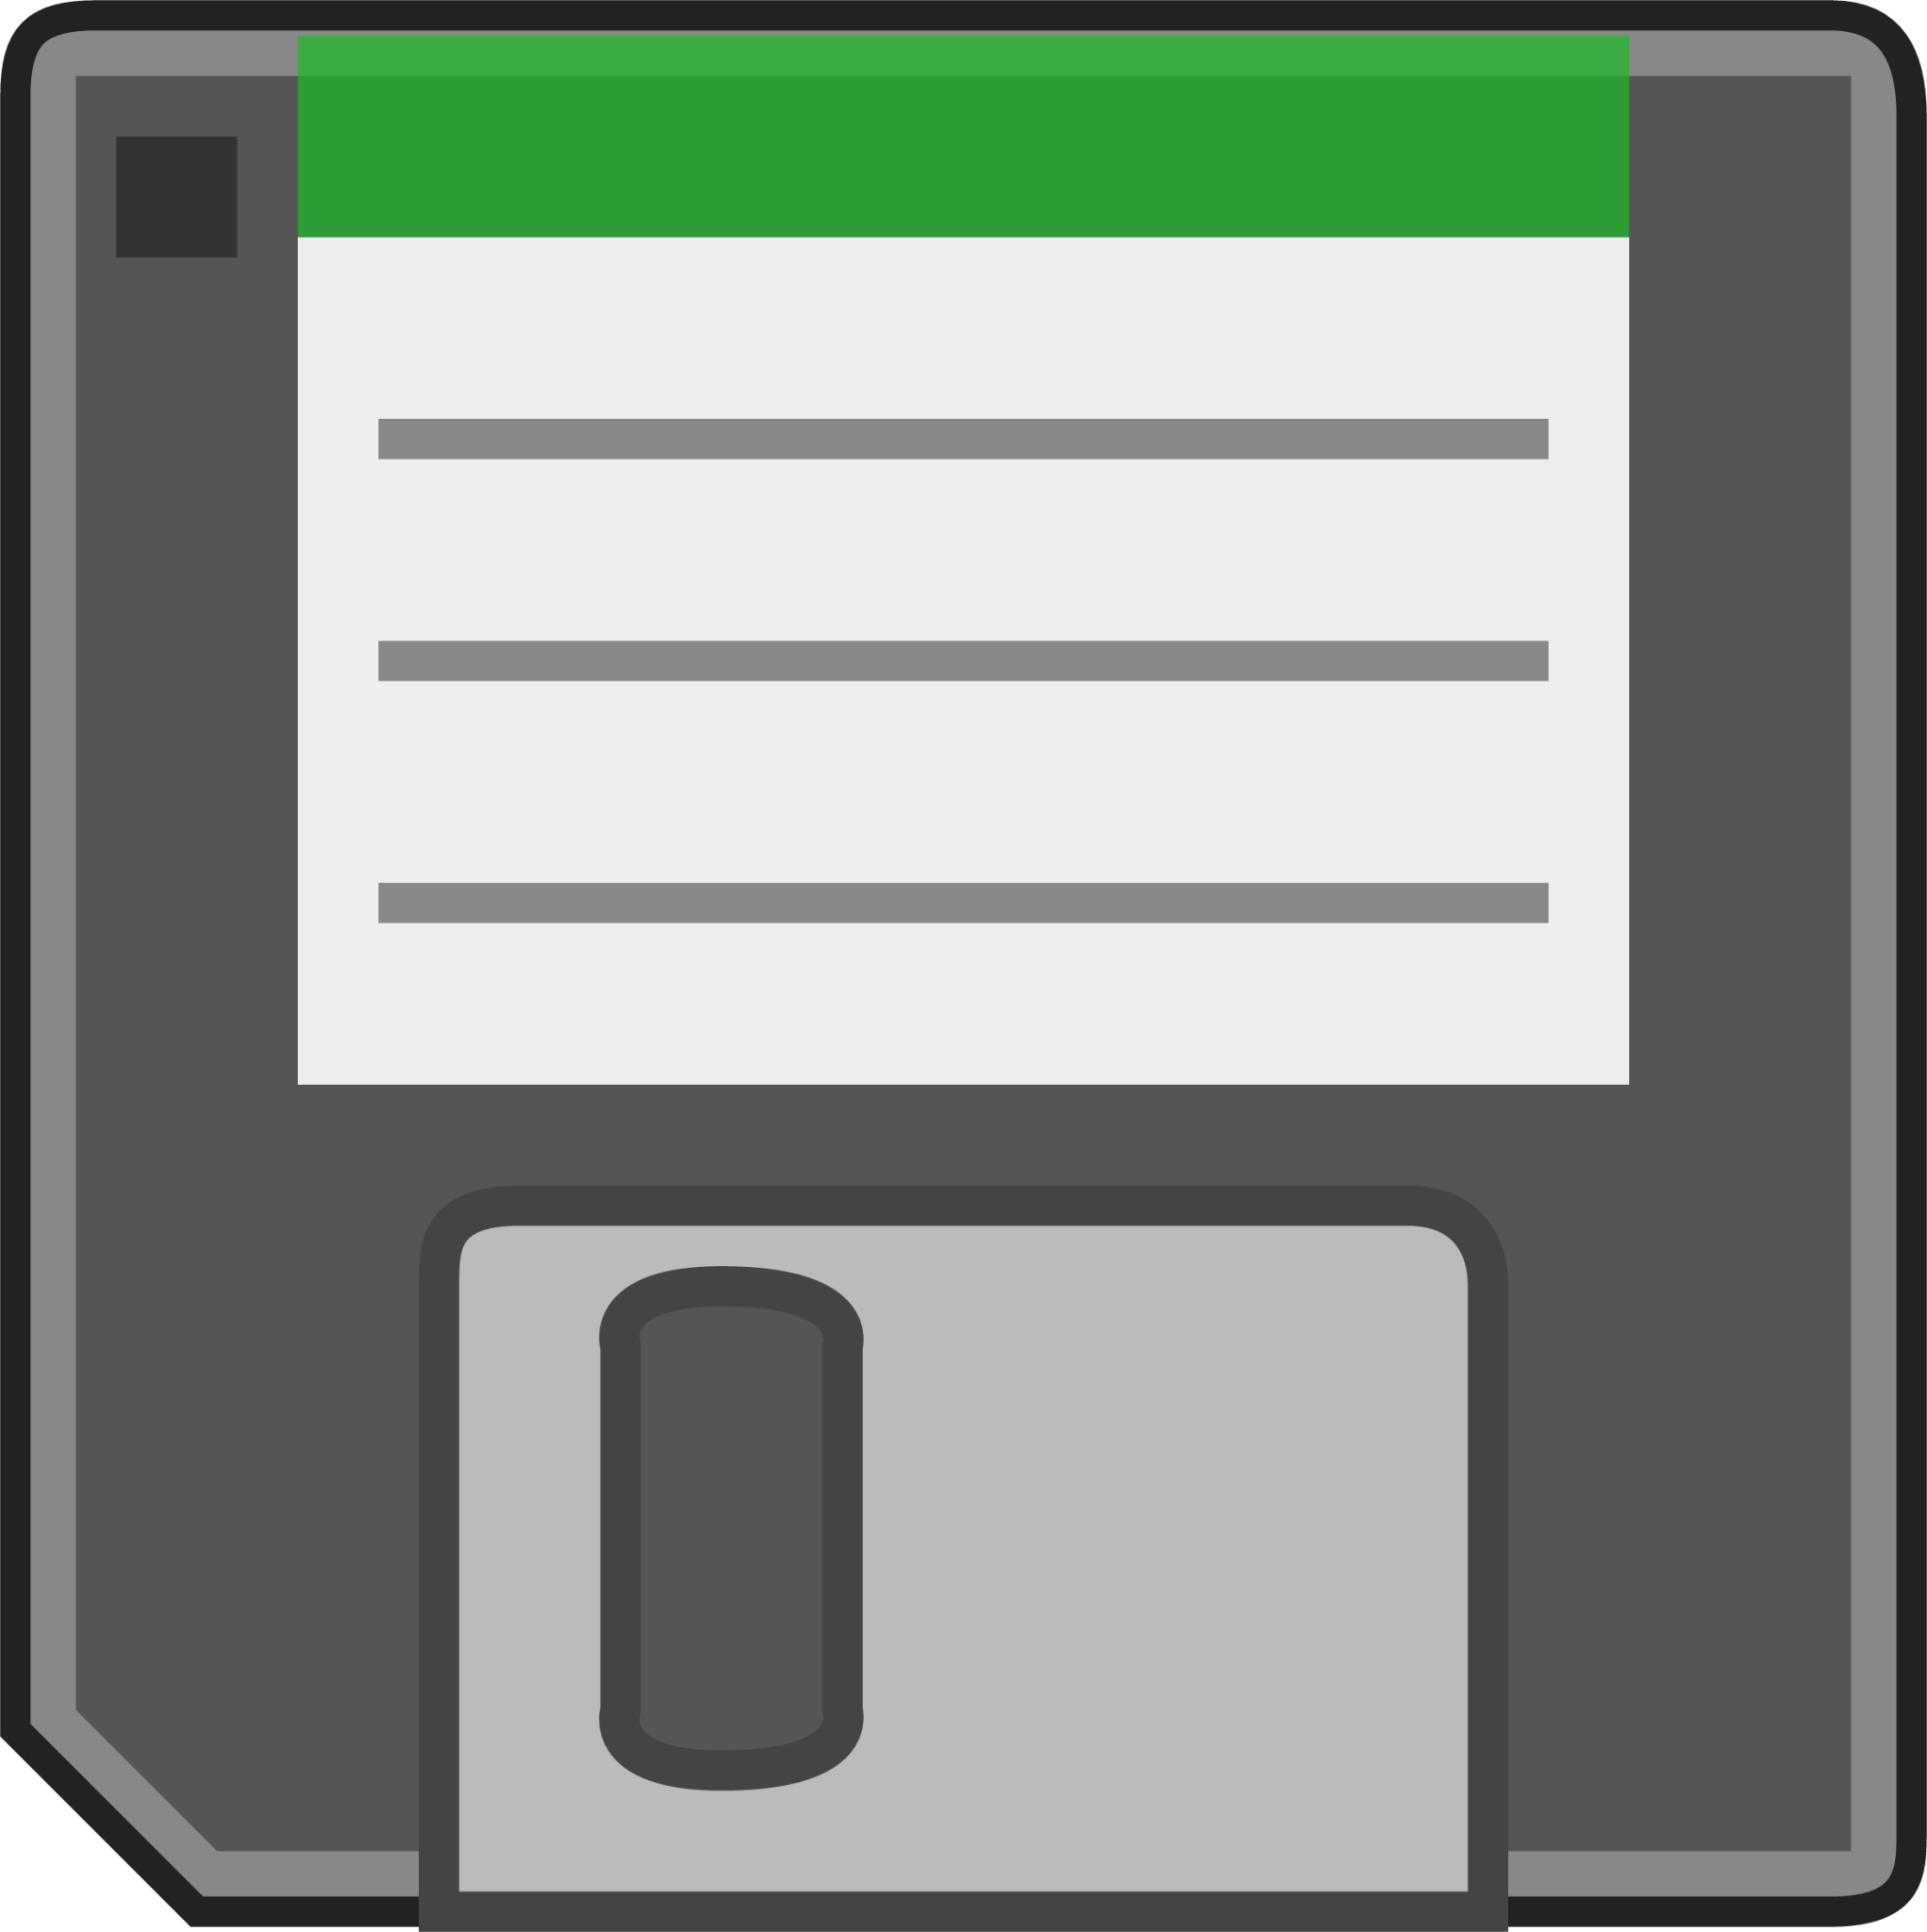 floppy icon